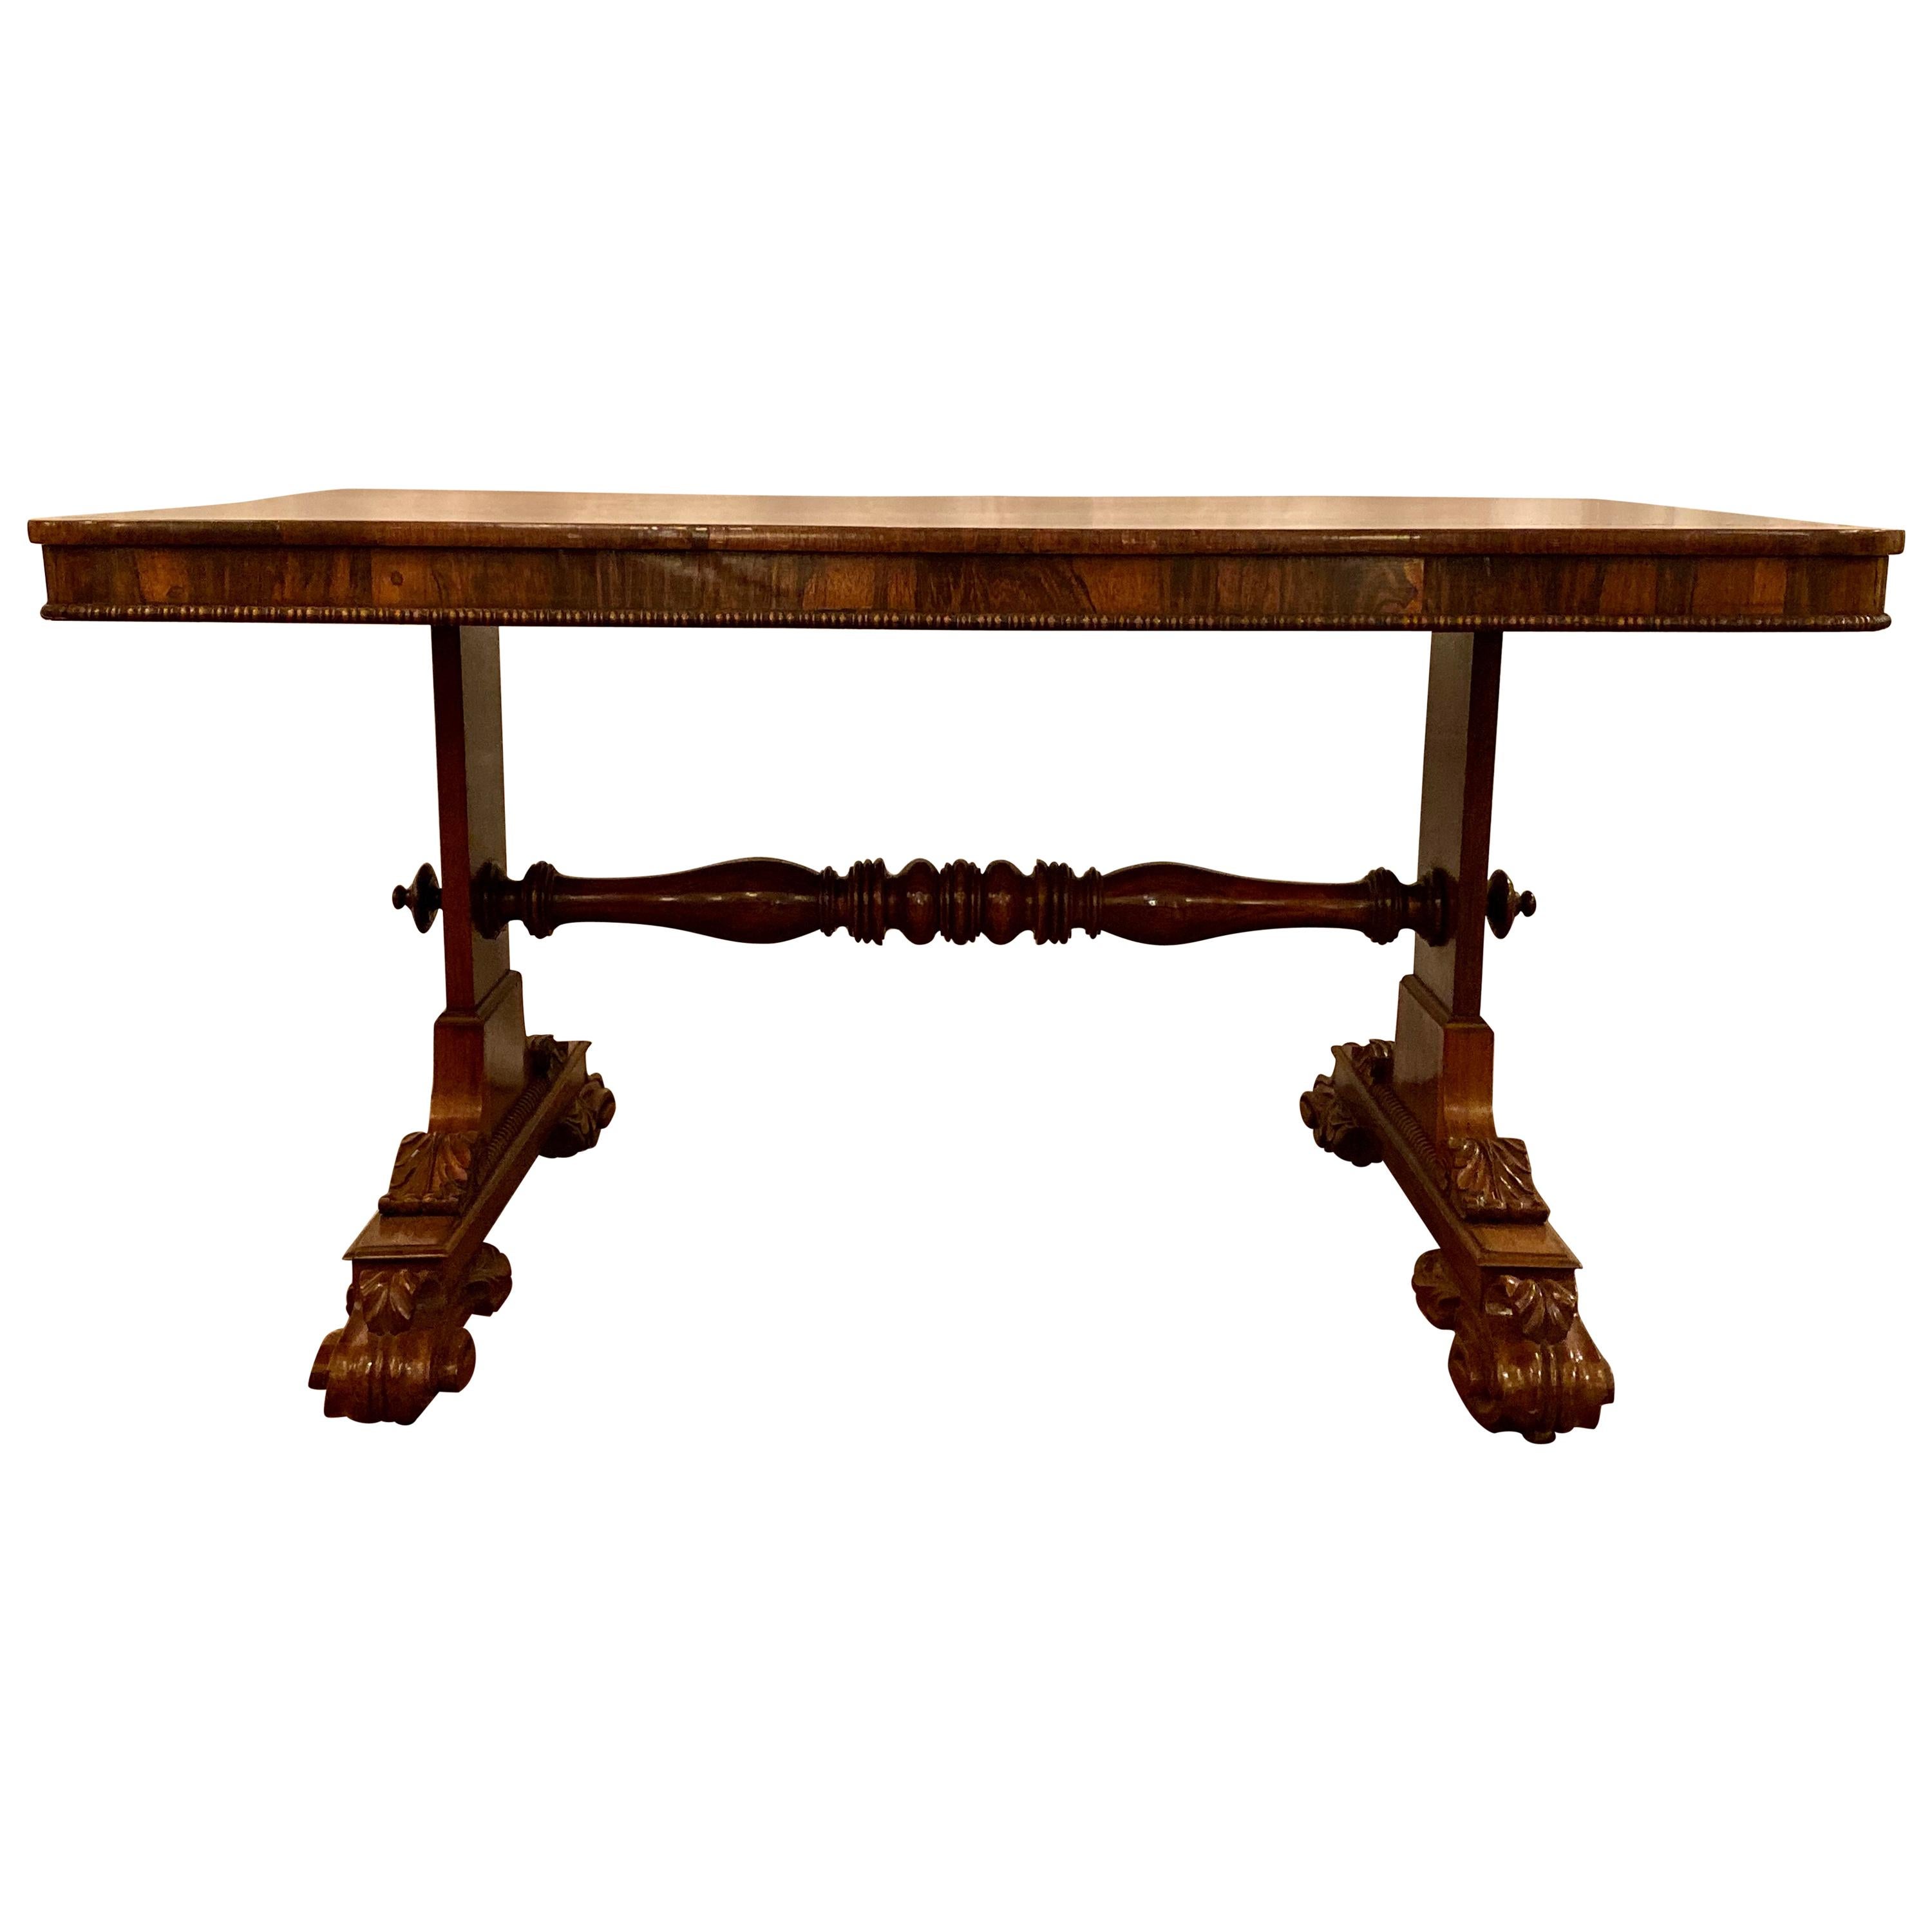 Antique English William IV Rosewood Table, circa 1830-1840